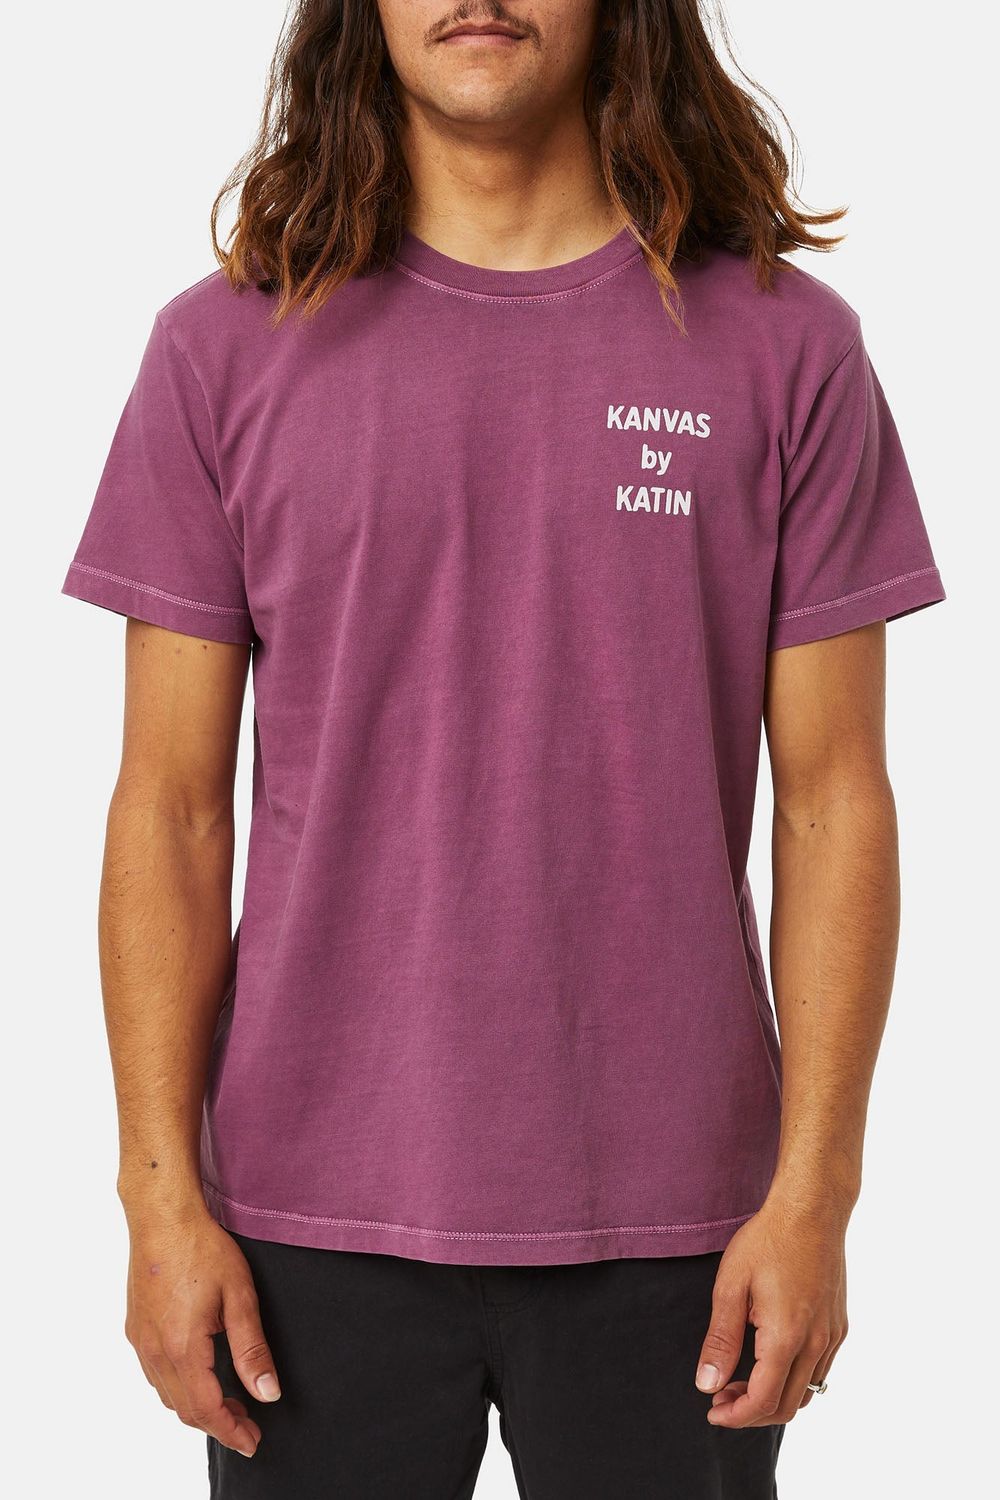 Katin Remote T-Shirt